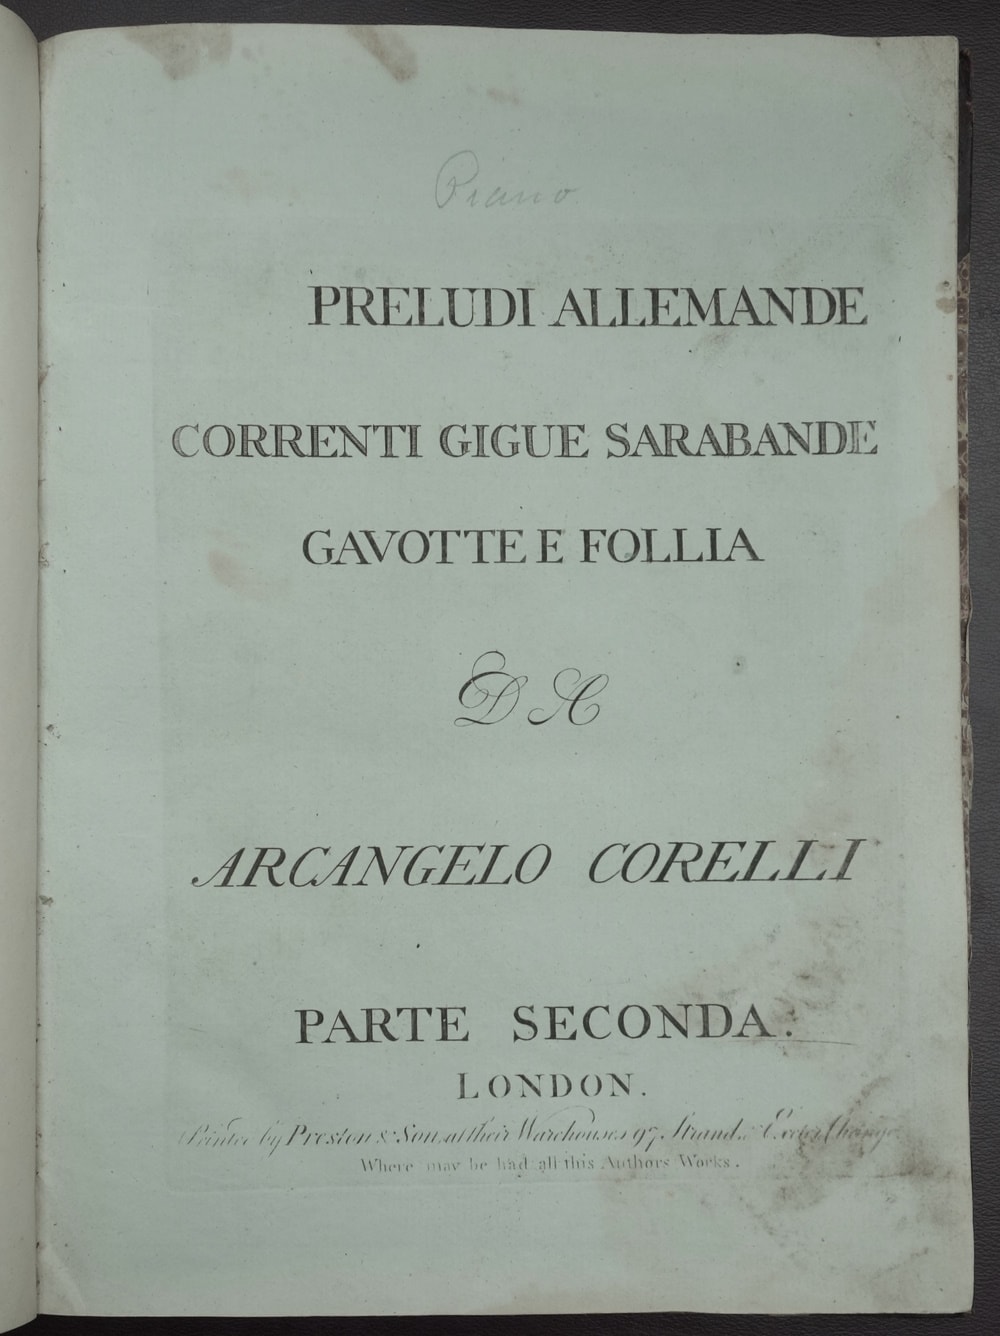 Corelli - solo sonatas, op. 5, cover; MLMSS 9923/1885